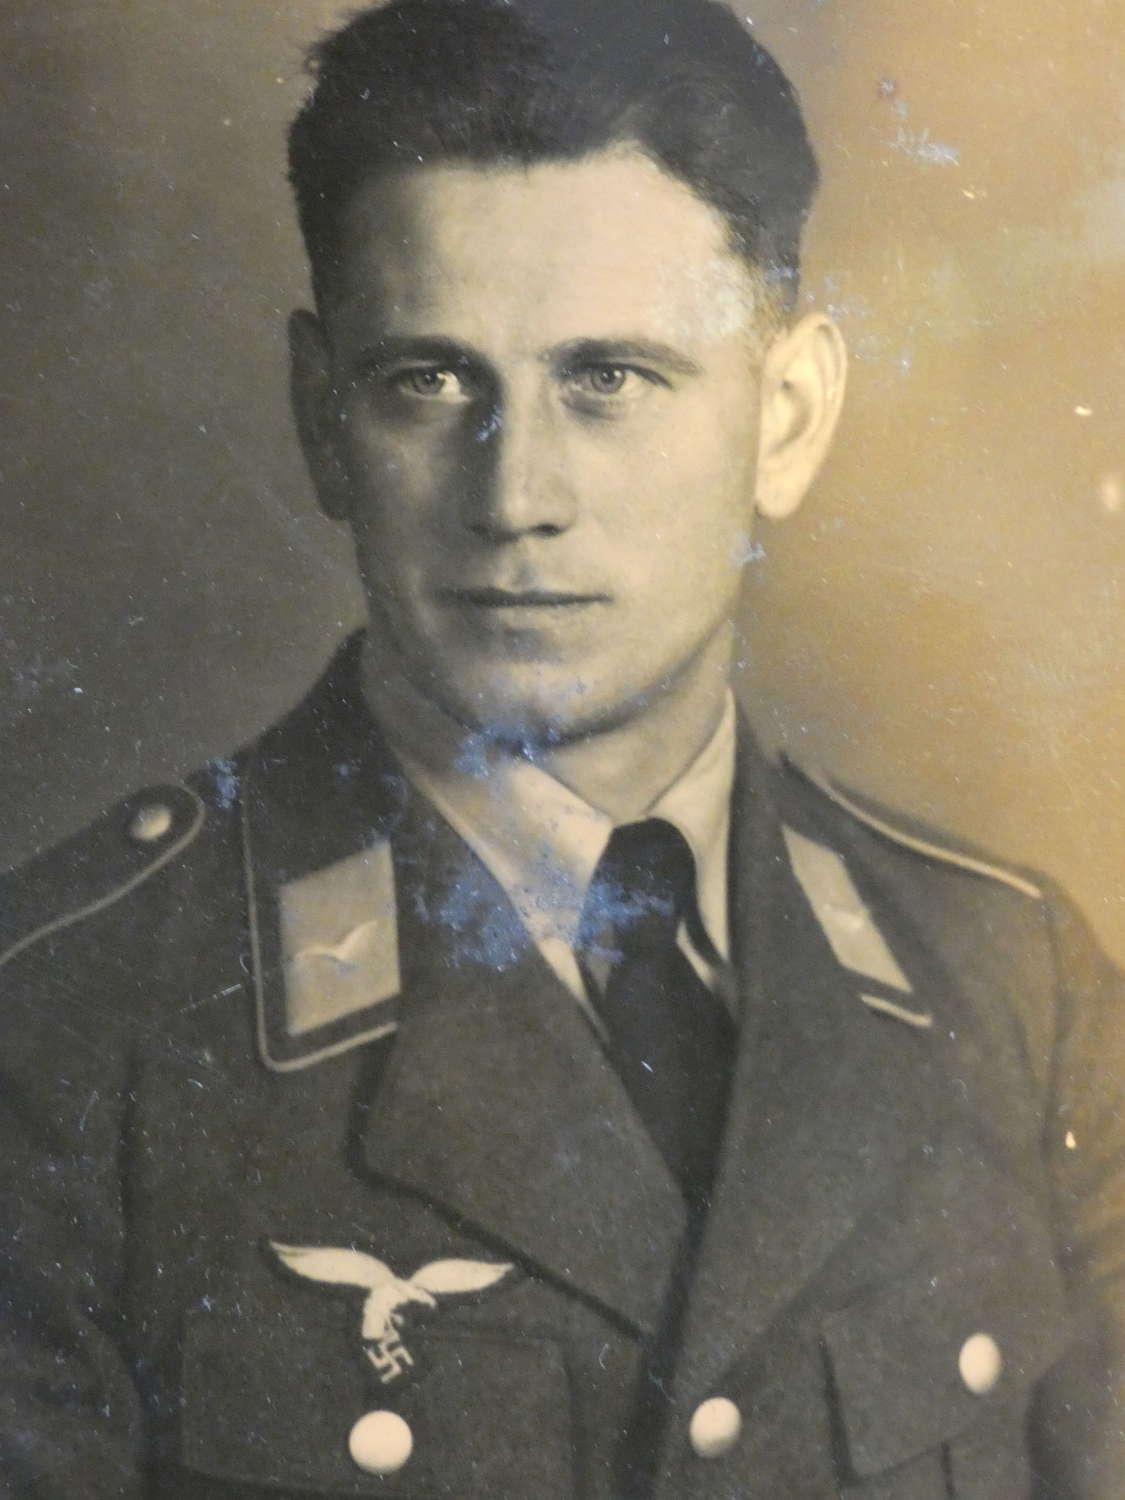 WW2 German Luftwaffe Photograph